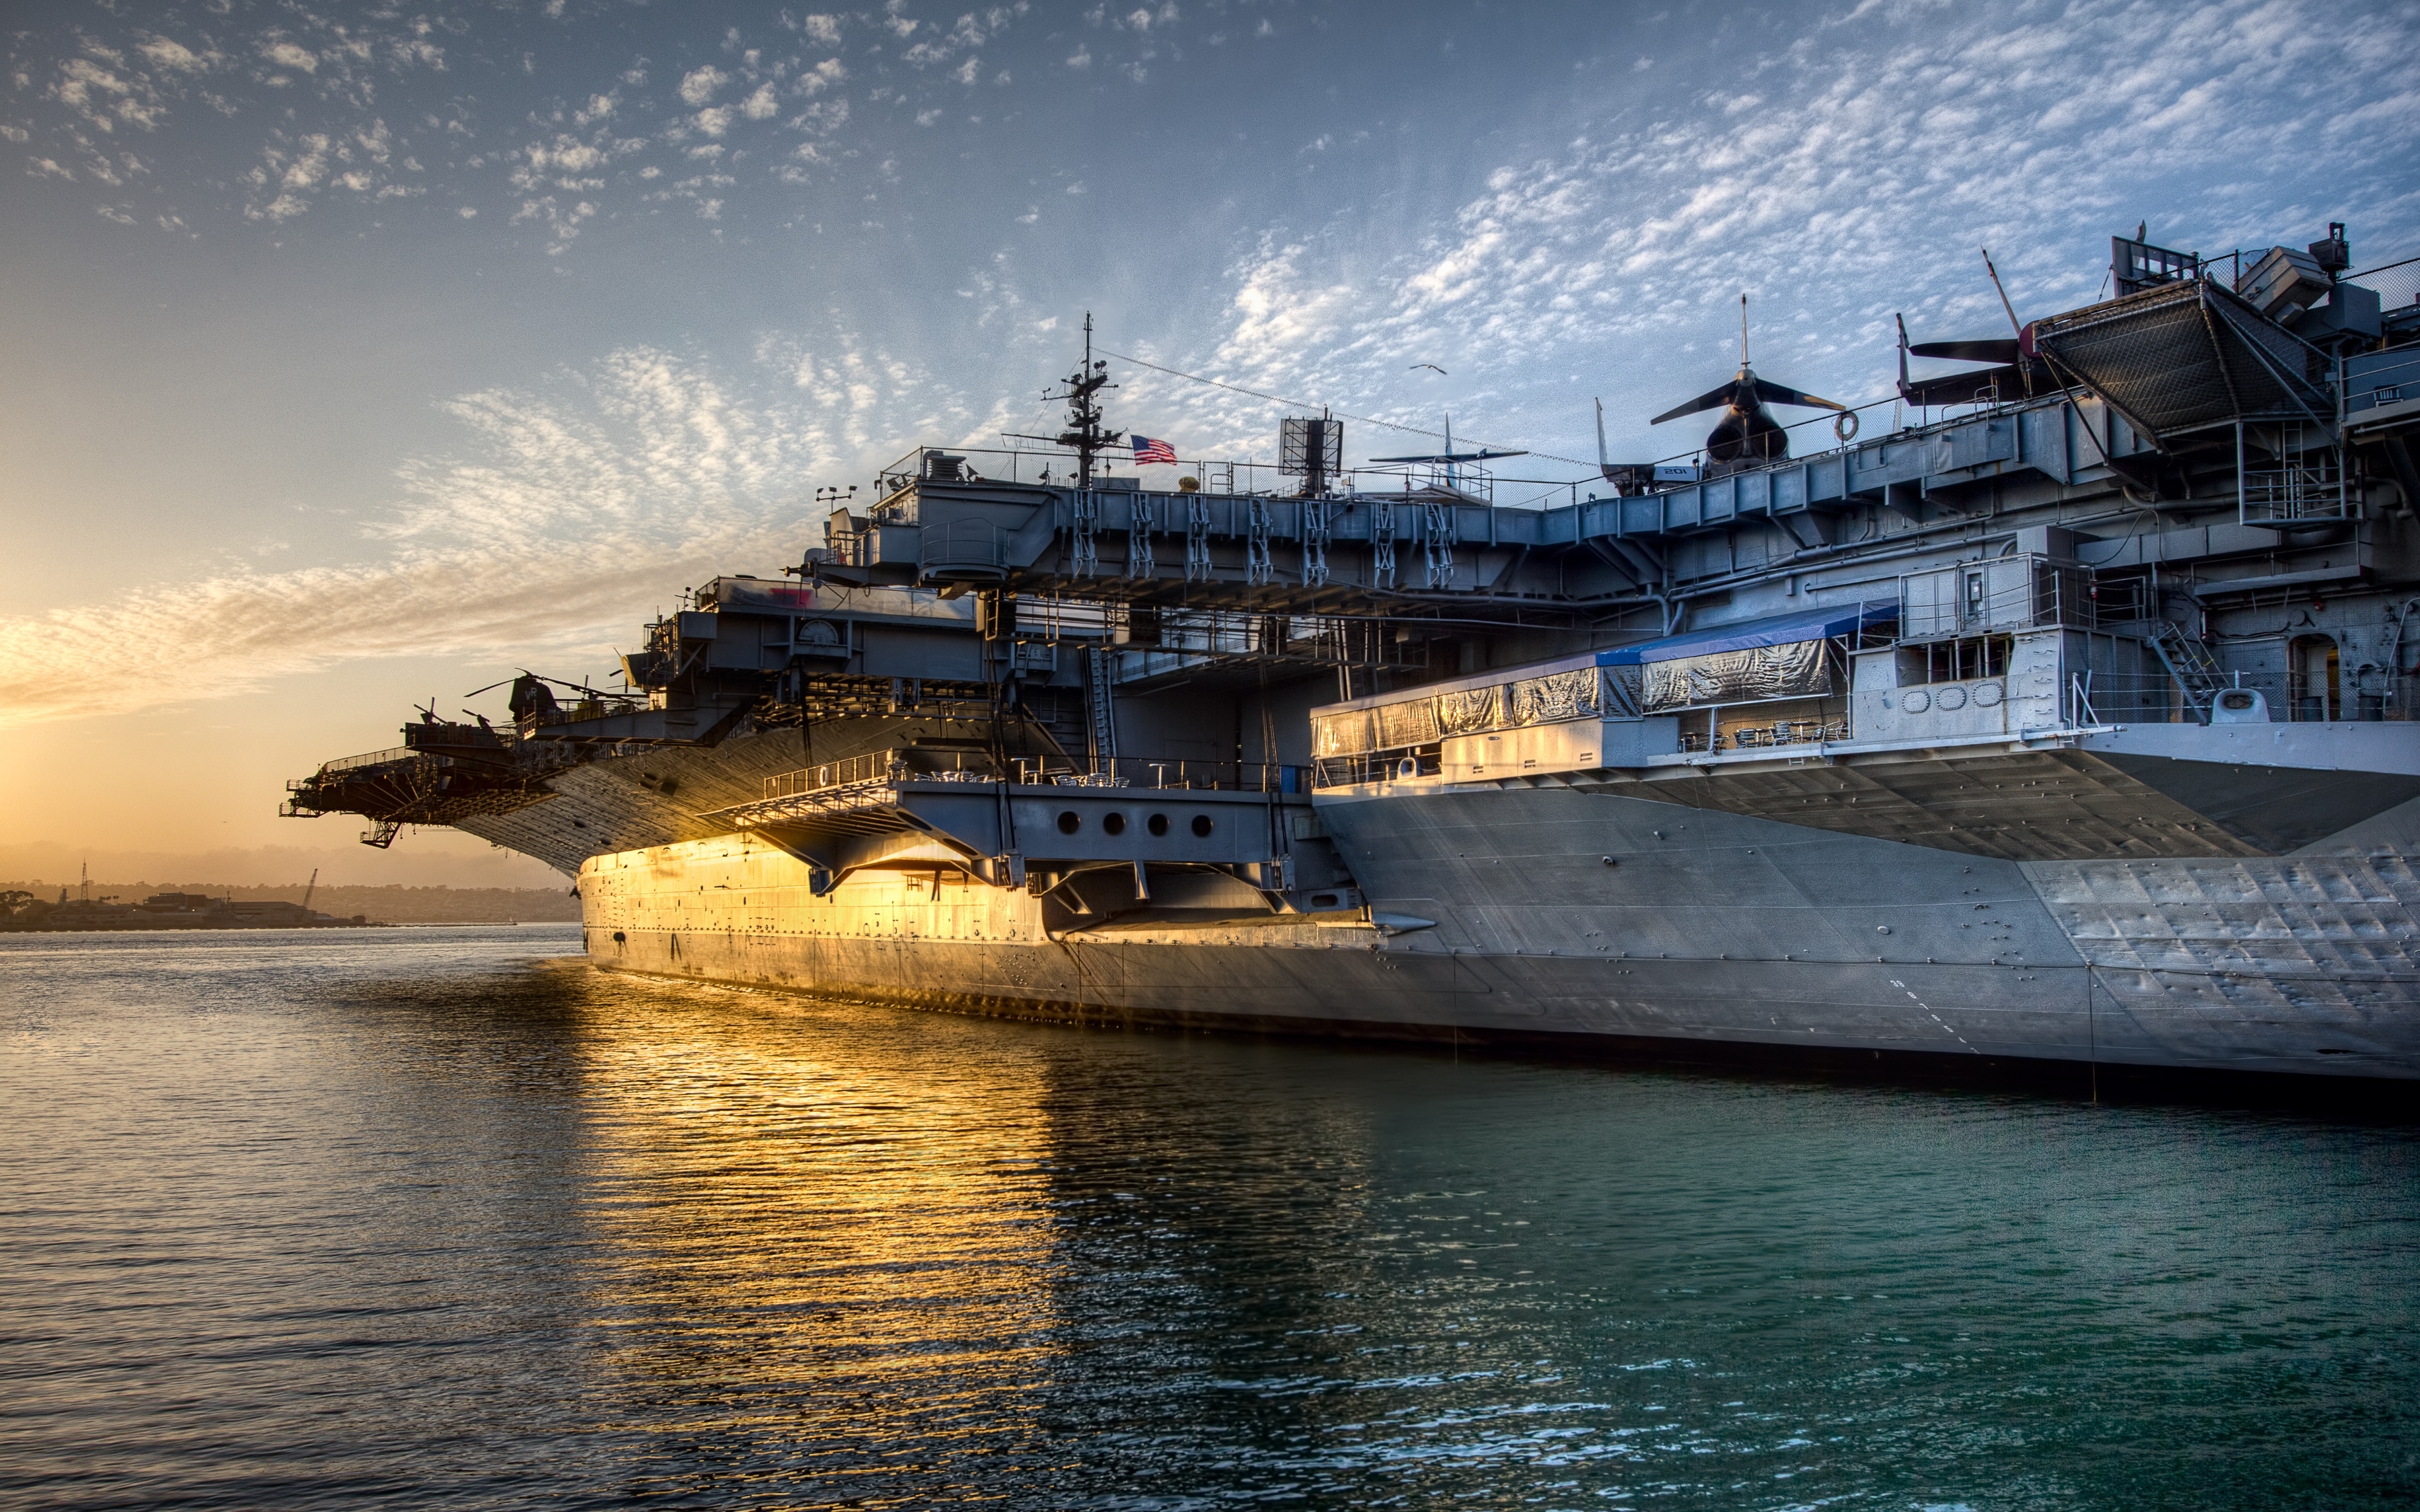 Download wallpaper: USS Midway Aircraft Carrier 3840x2400